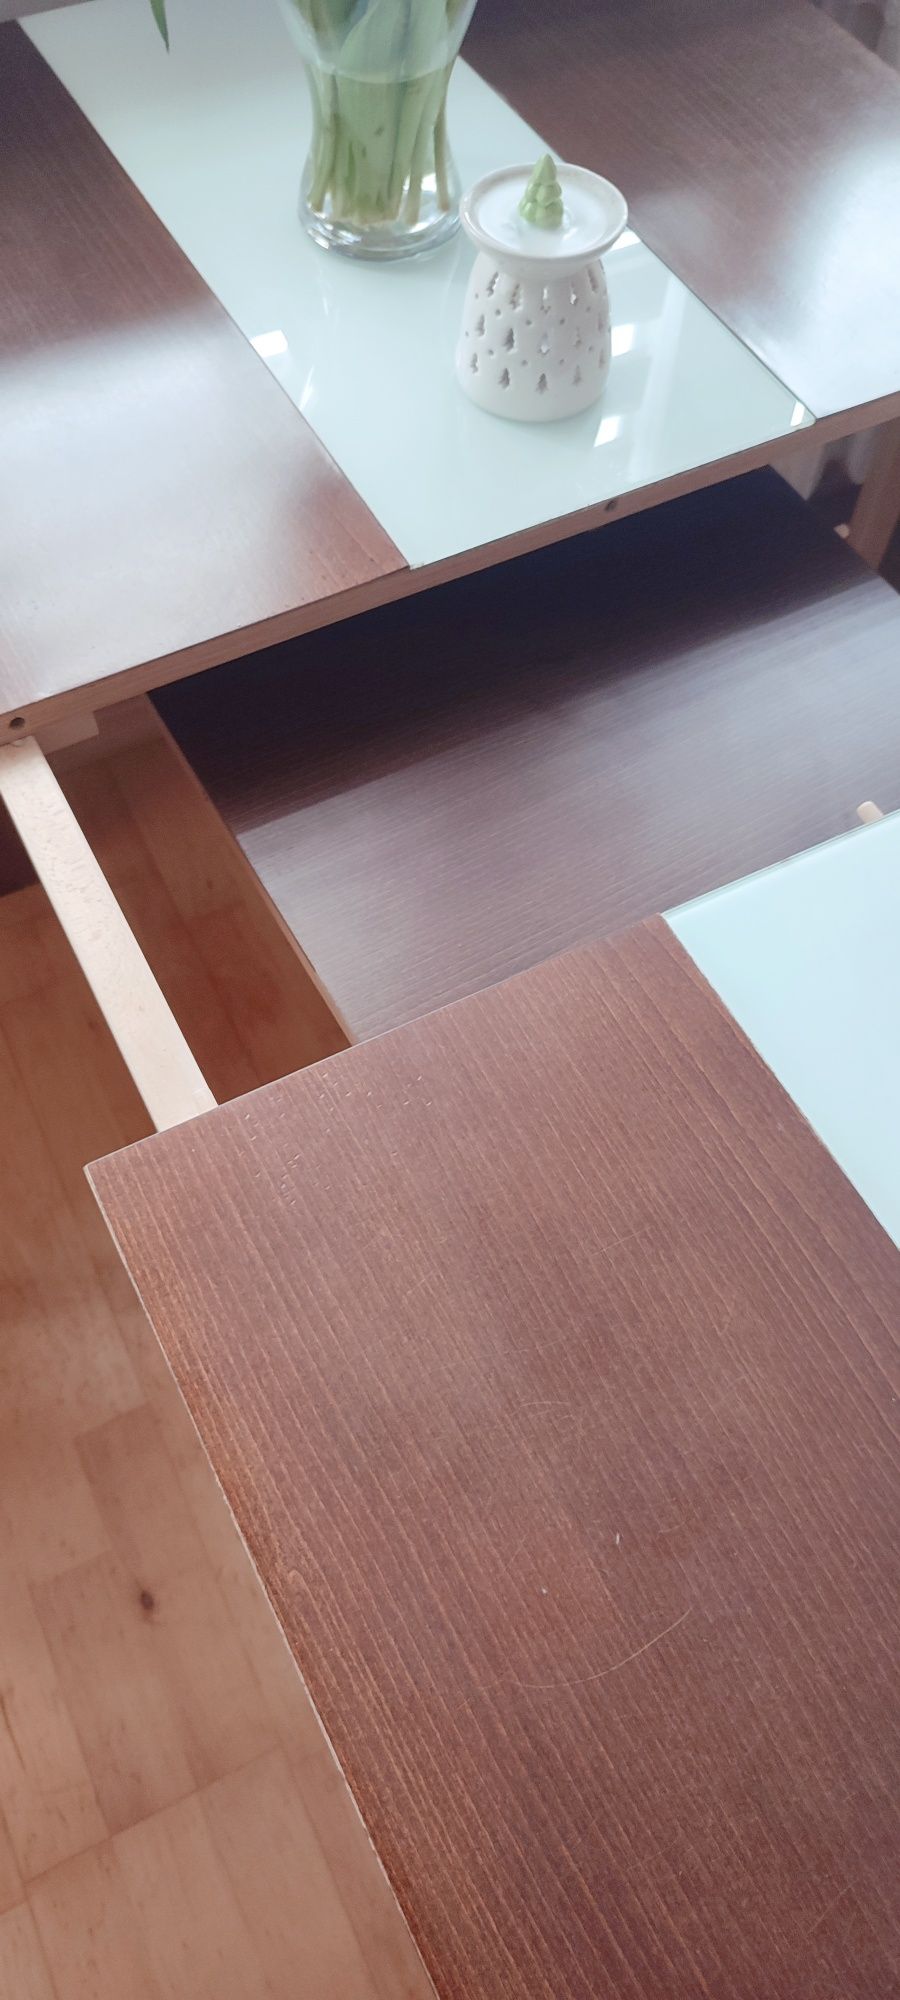 Drewniany stół rozkładany